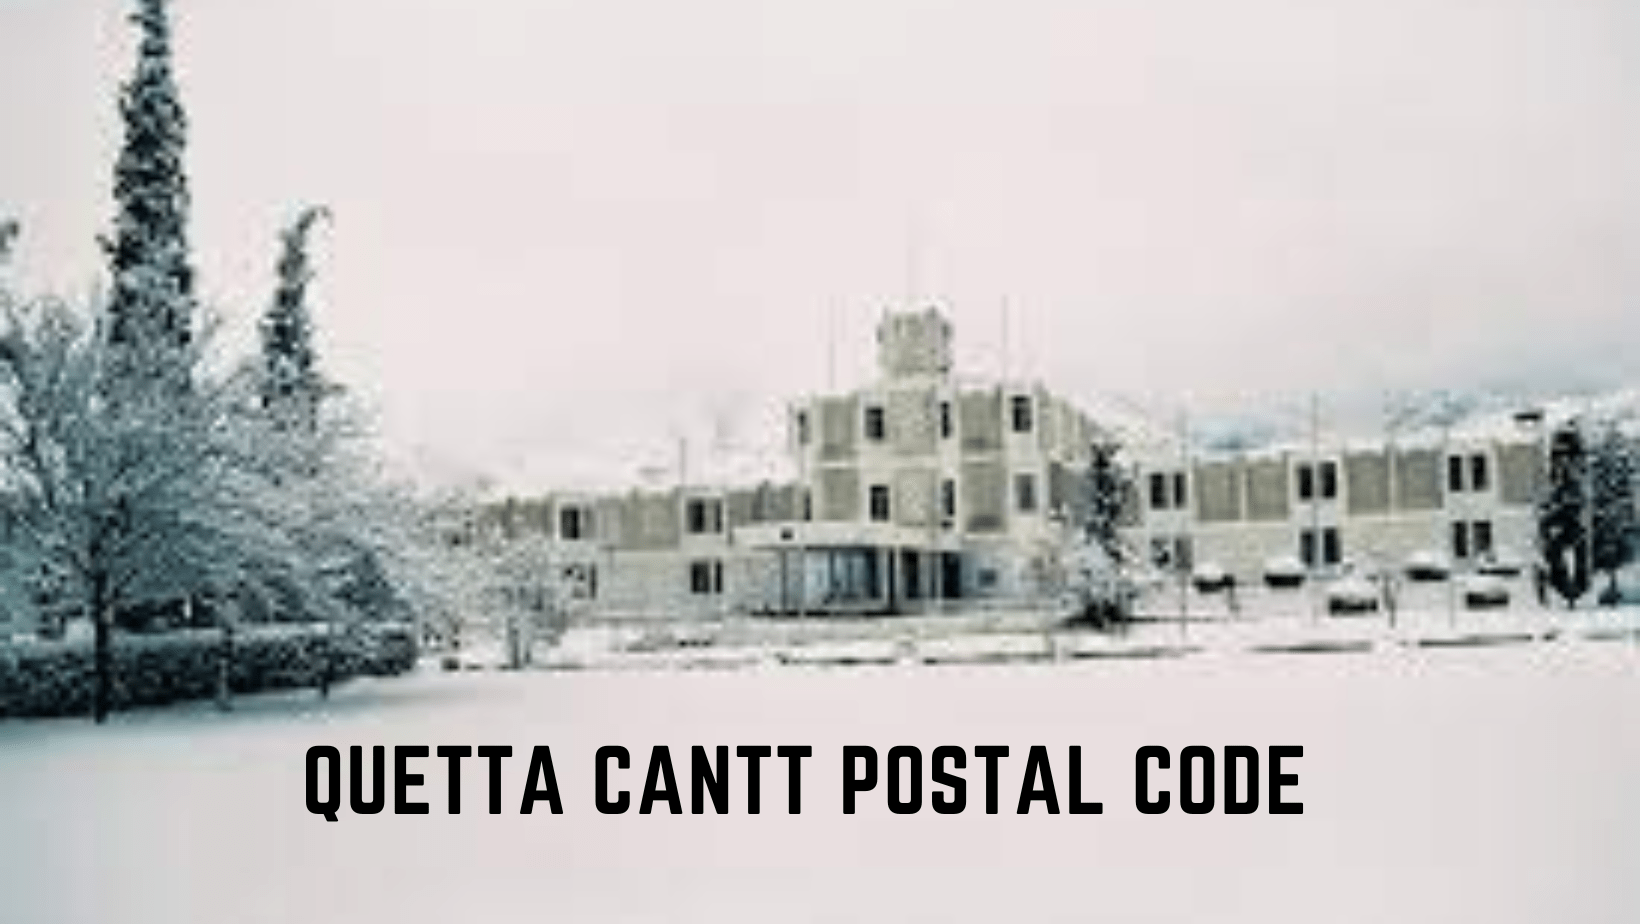 Quetta Cantt Postal Code